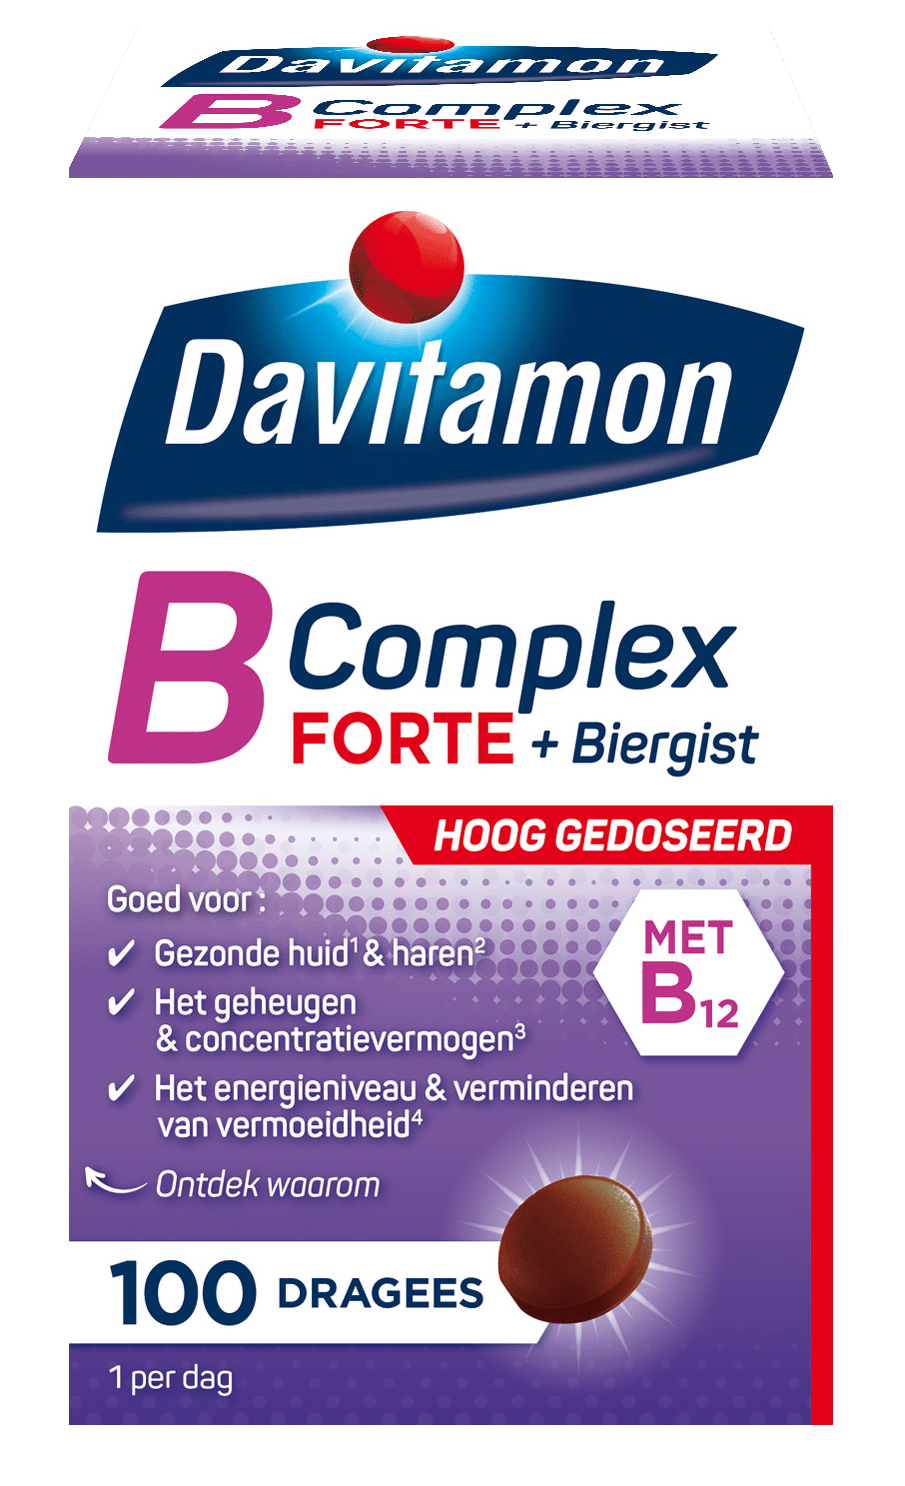 Beweren verkorten Nietje Davitamon B-Complex Forte 100 dragees: helpt bij vermoeidheid